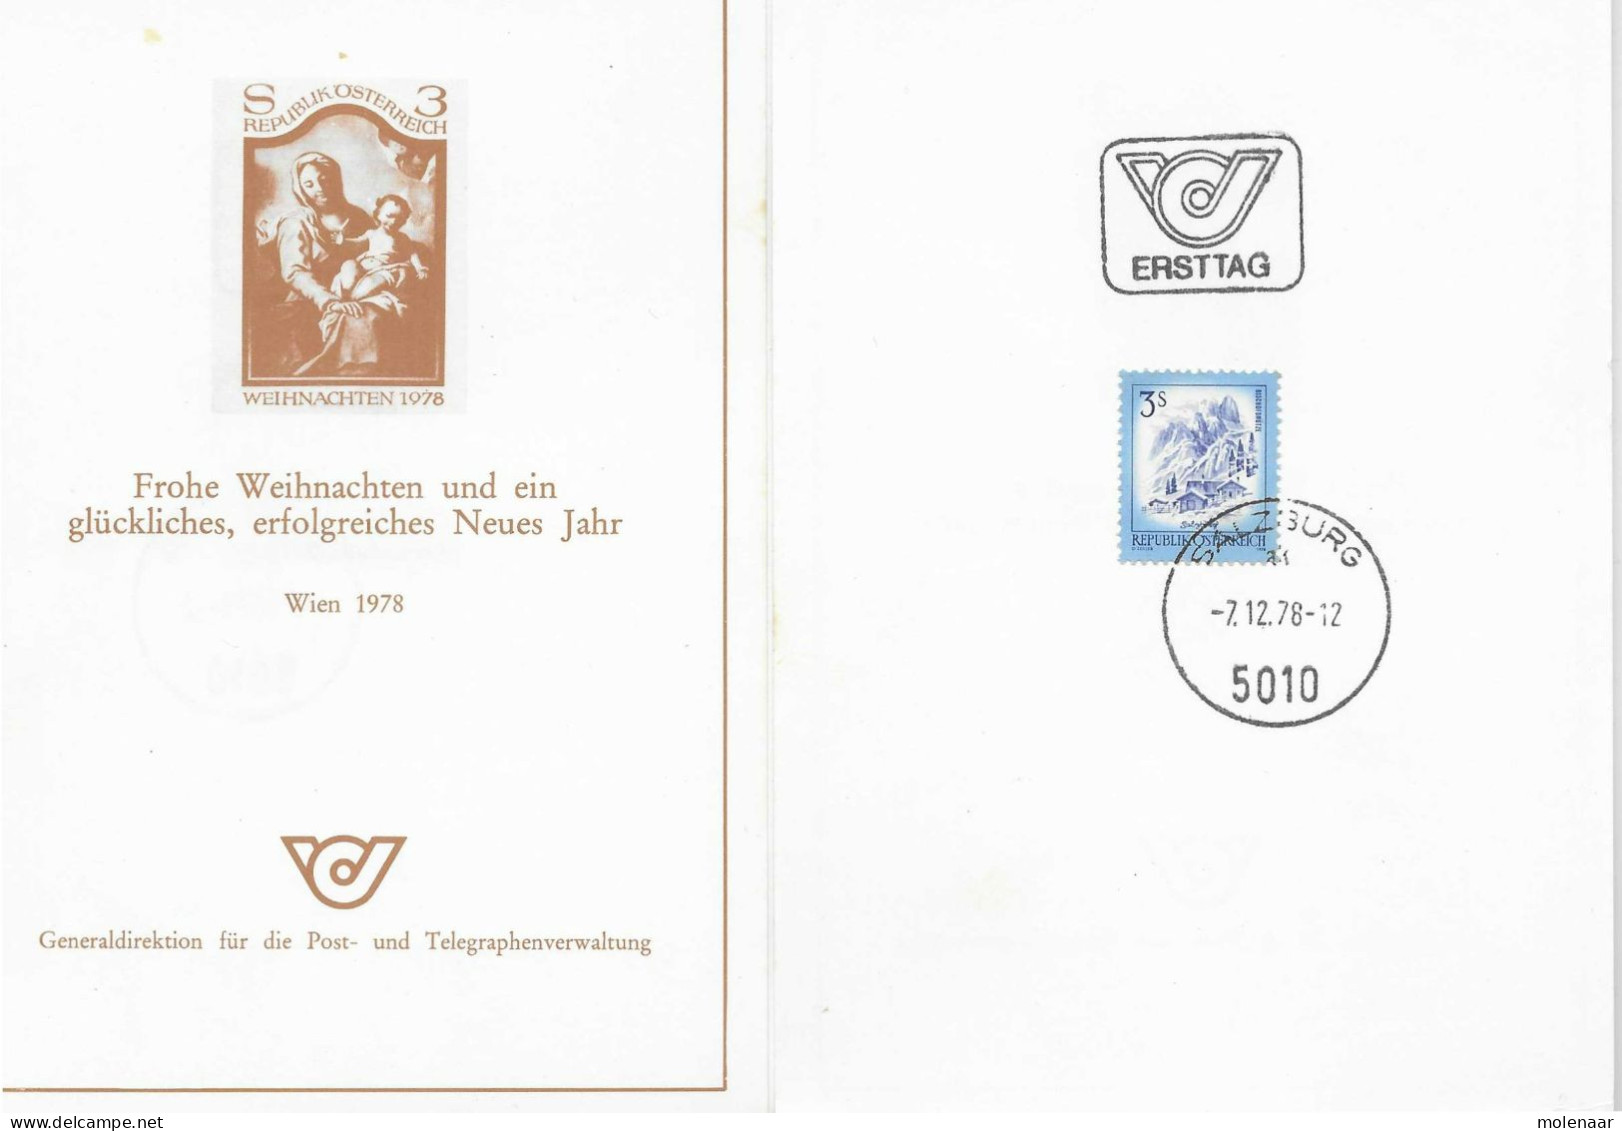 Postzegels > Europa > Oostenrijk >  Republiek > 1971-1900 > Kaart Uit 1978  Met 1 Postzegel (17772) - Covers & Documents